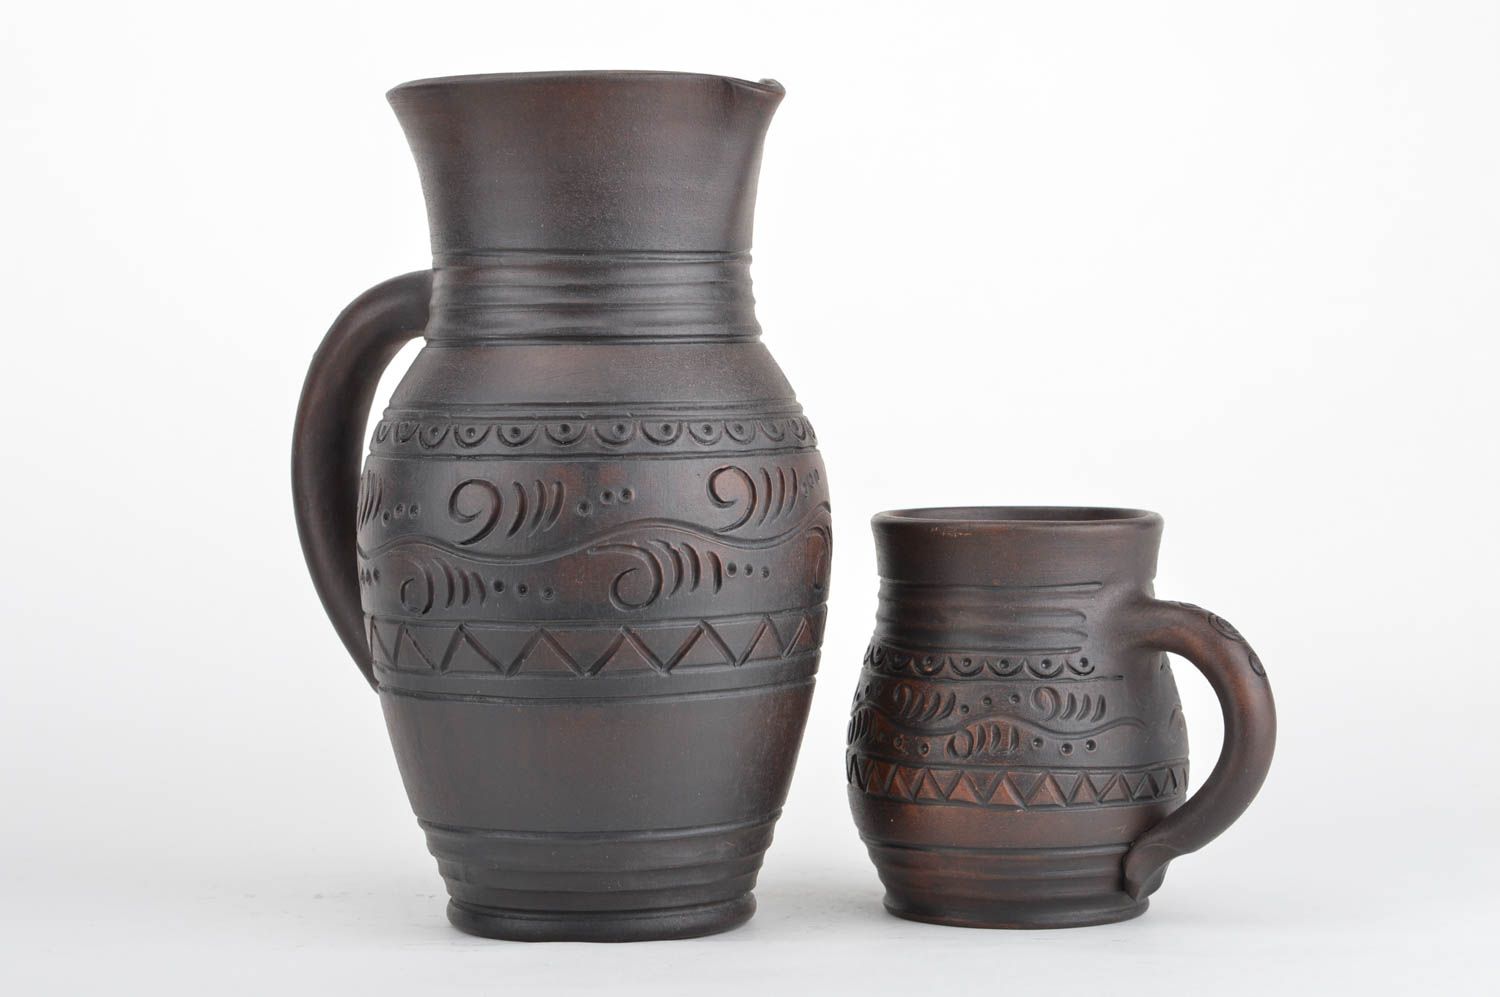 Глиняный кувшин для воды 2.2 л и чашка набор из 2 штук коричневый ручной работы фото 2